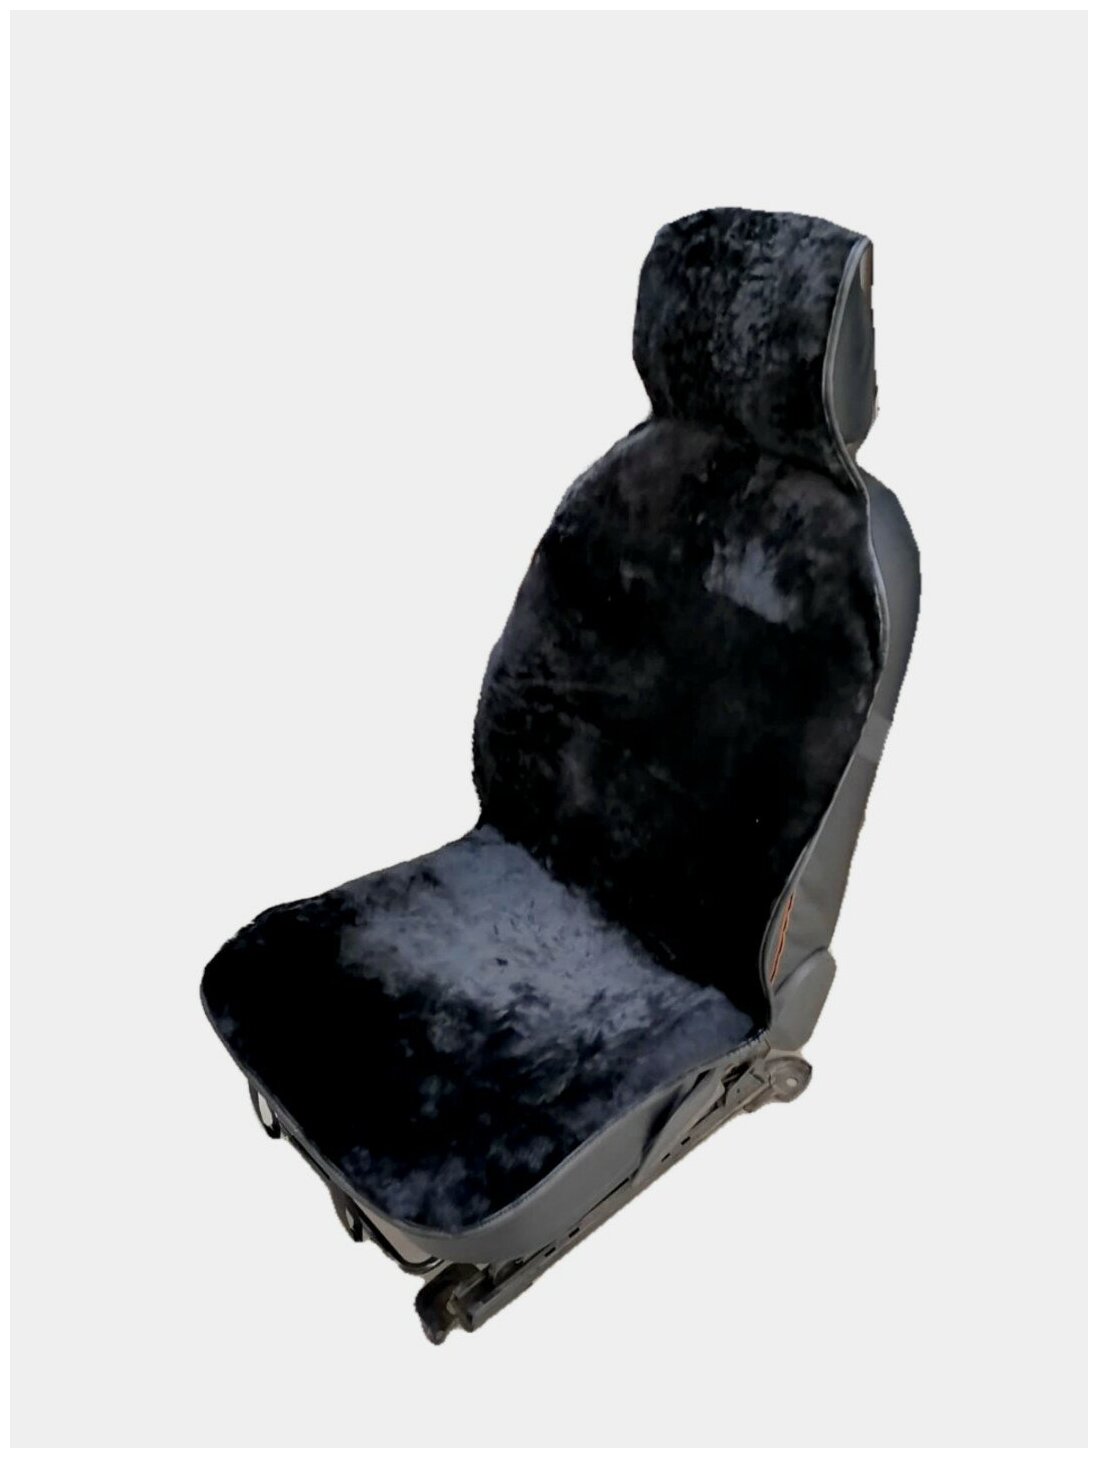 Меховые накидки на сиденье автомобиля, Материал: натуральный мех Мутон, Цвет: черный